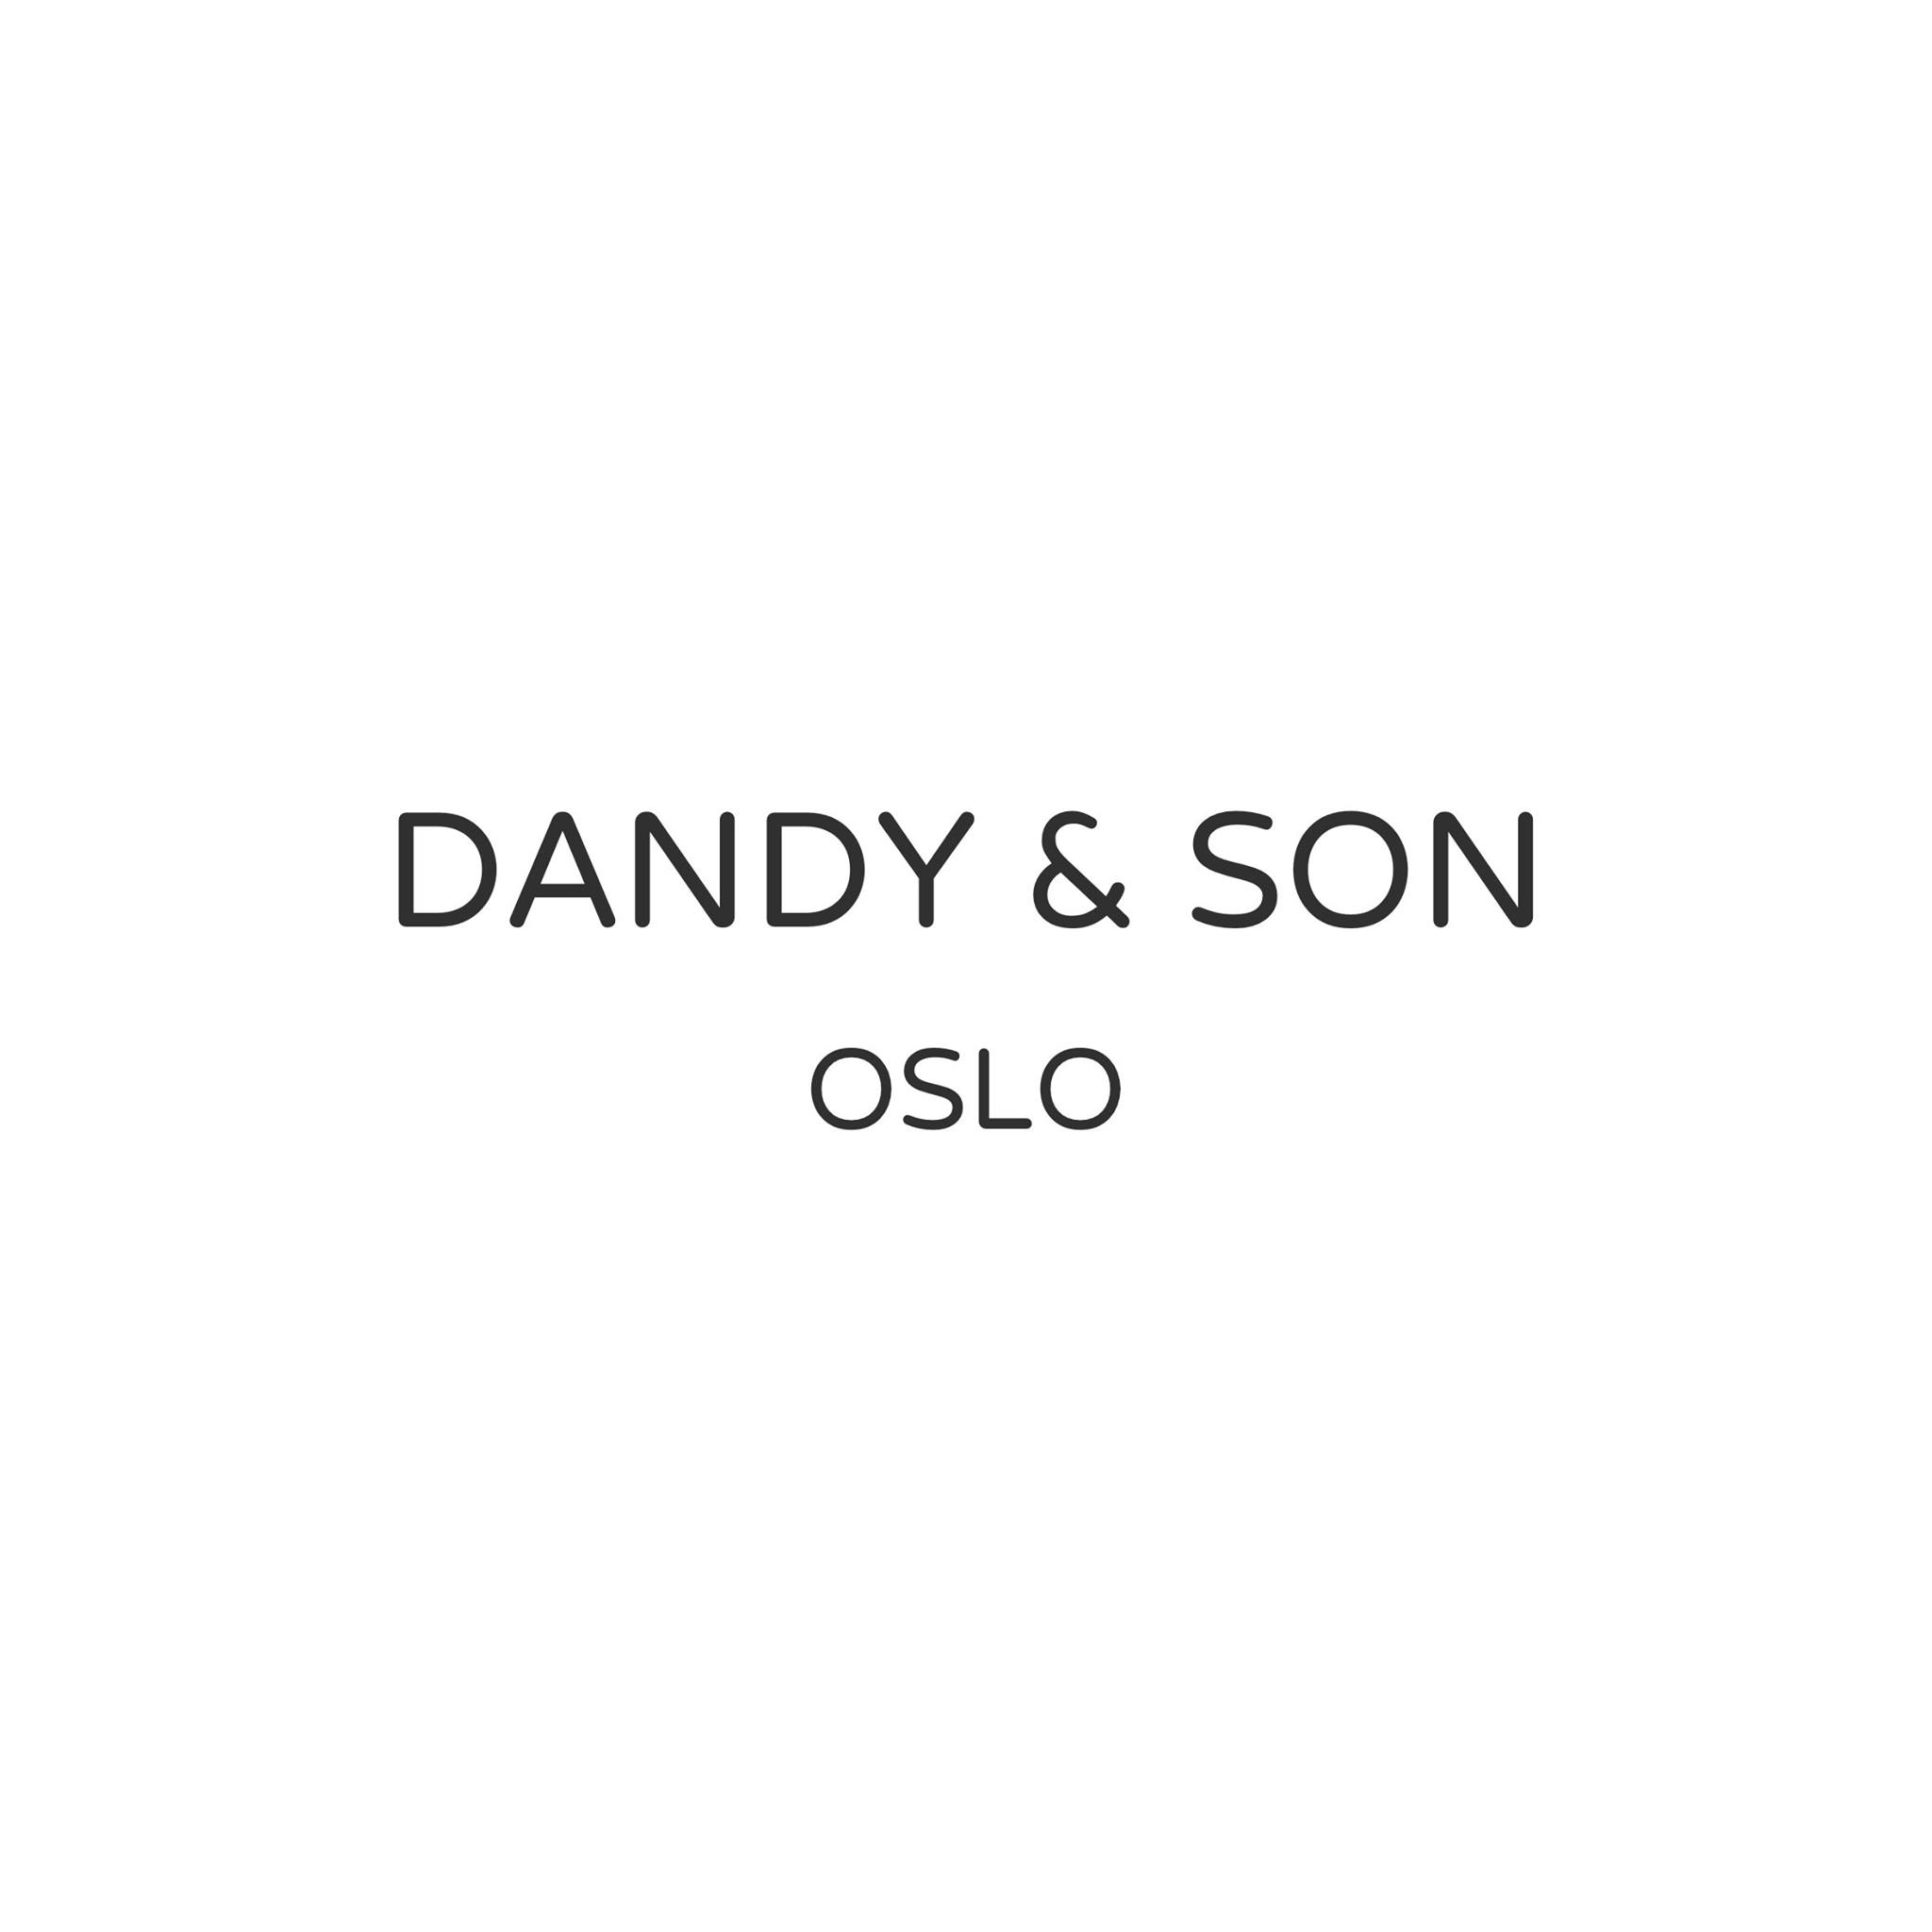 DANDY & SON LLC Logo